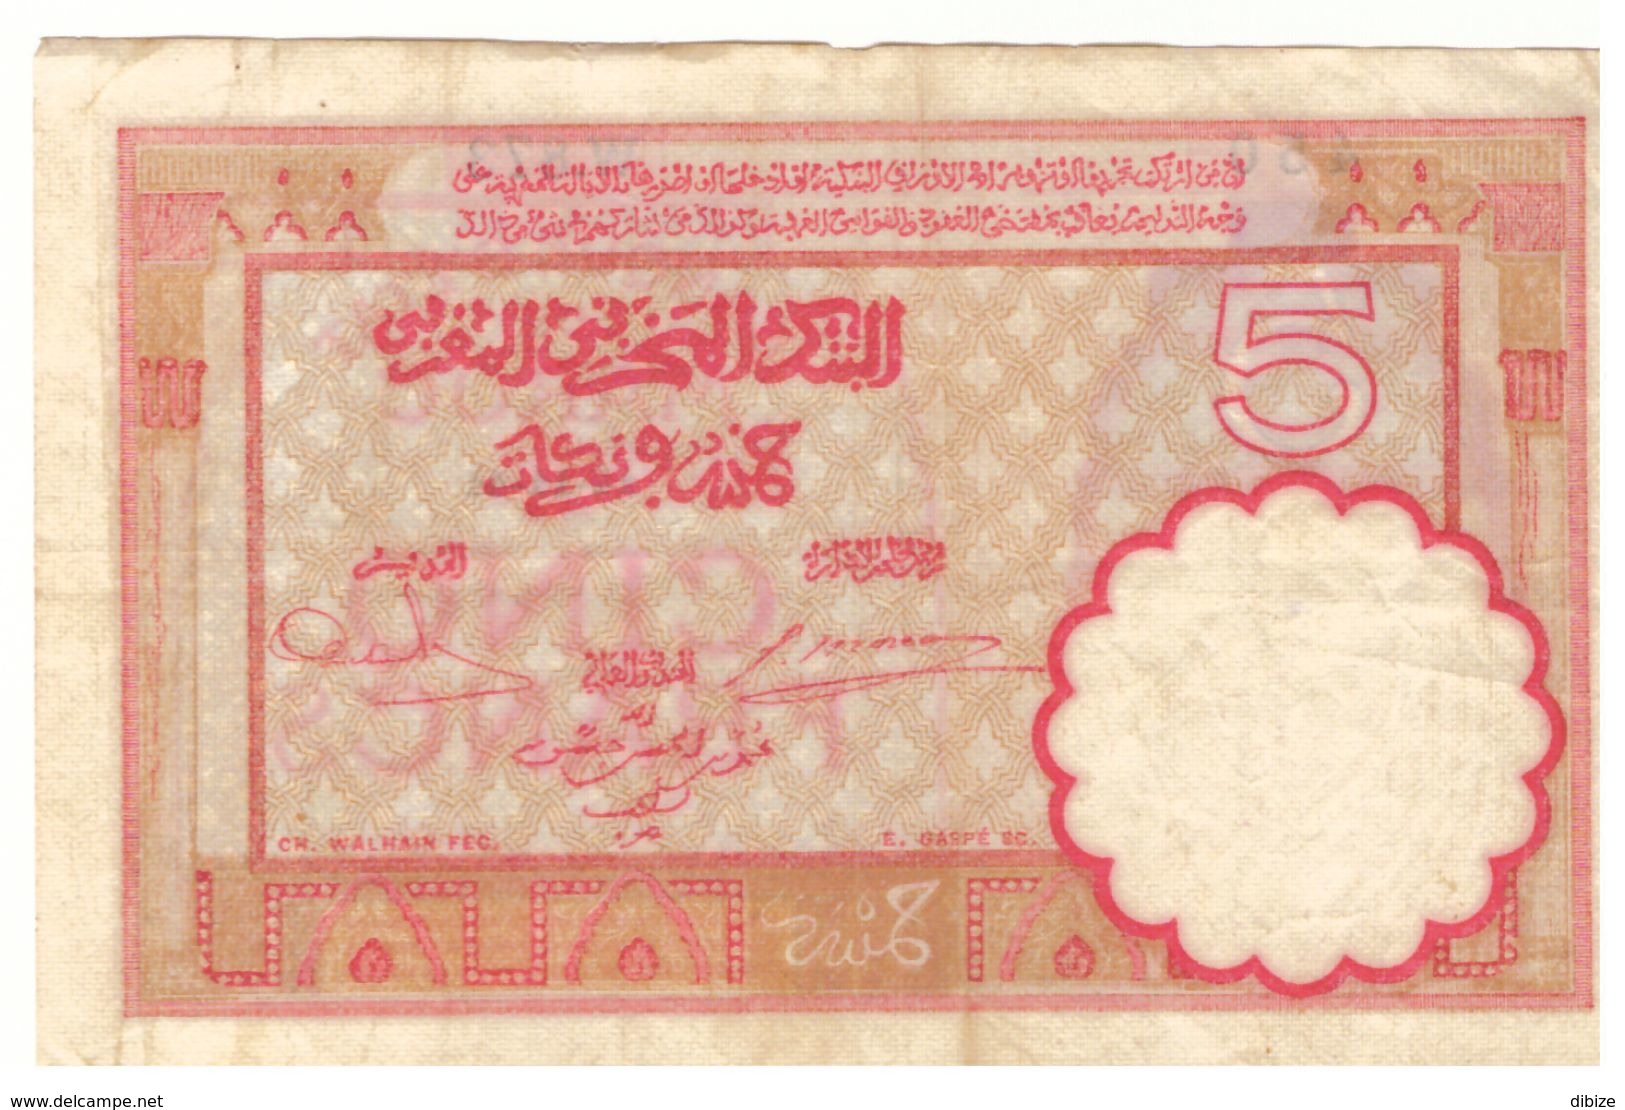 Maroc Billet De 5 Francs De 1941 (14-11-1941). Etat Moyen. Port 4 Euros En Recommandé. - Morocco